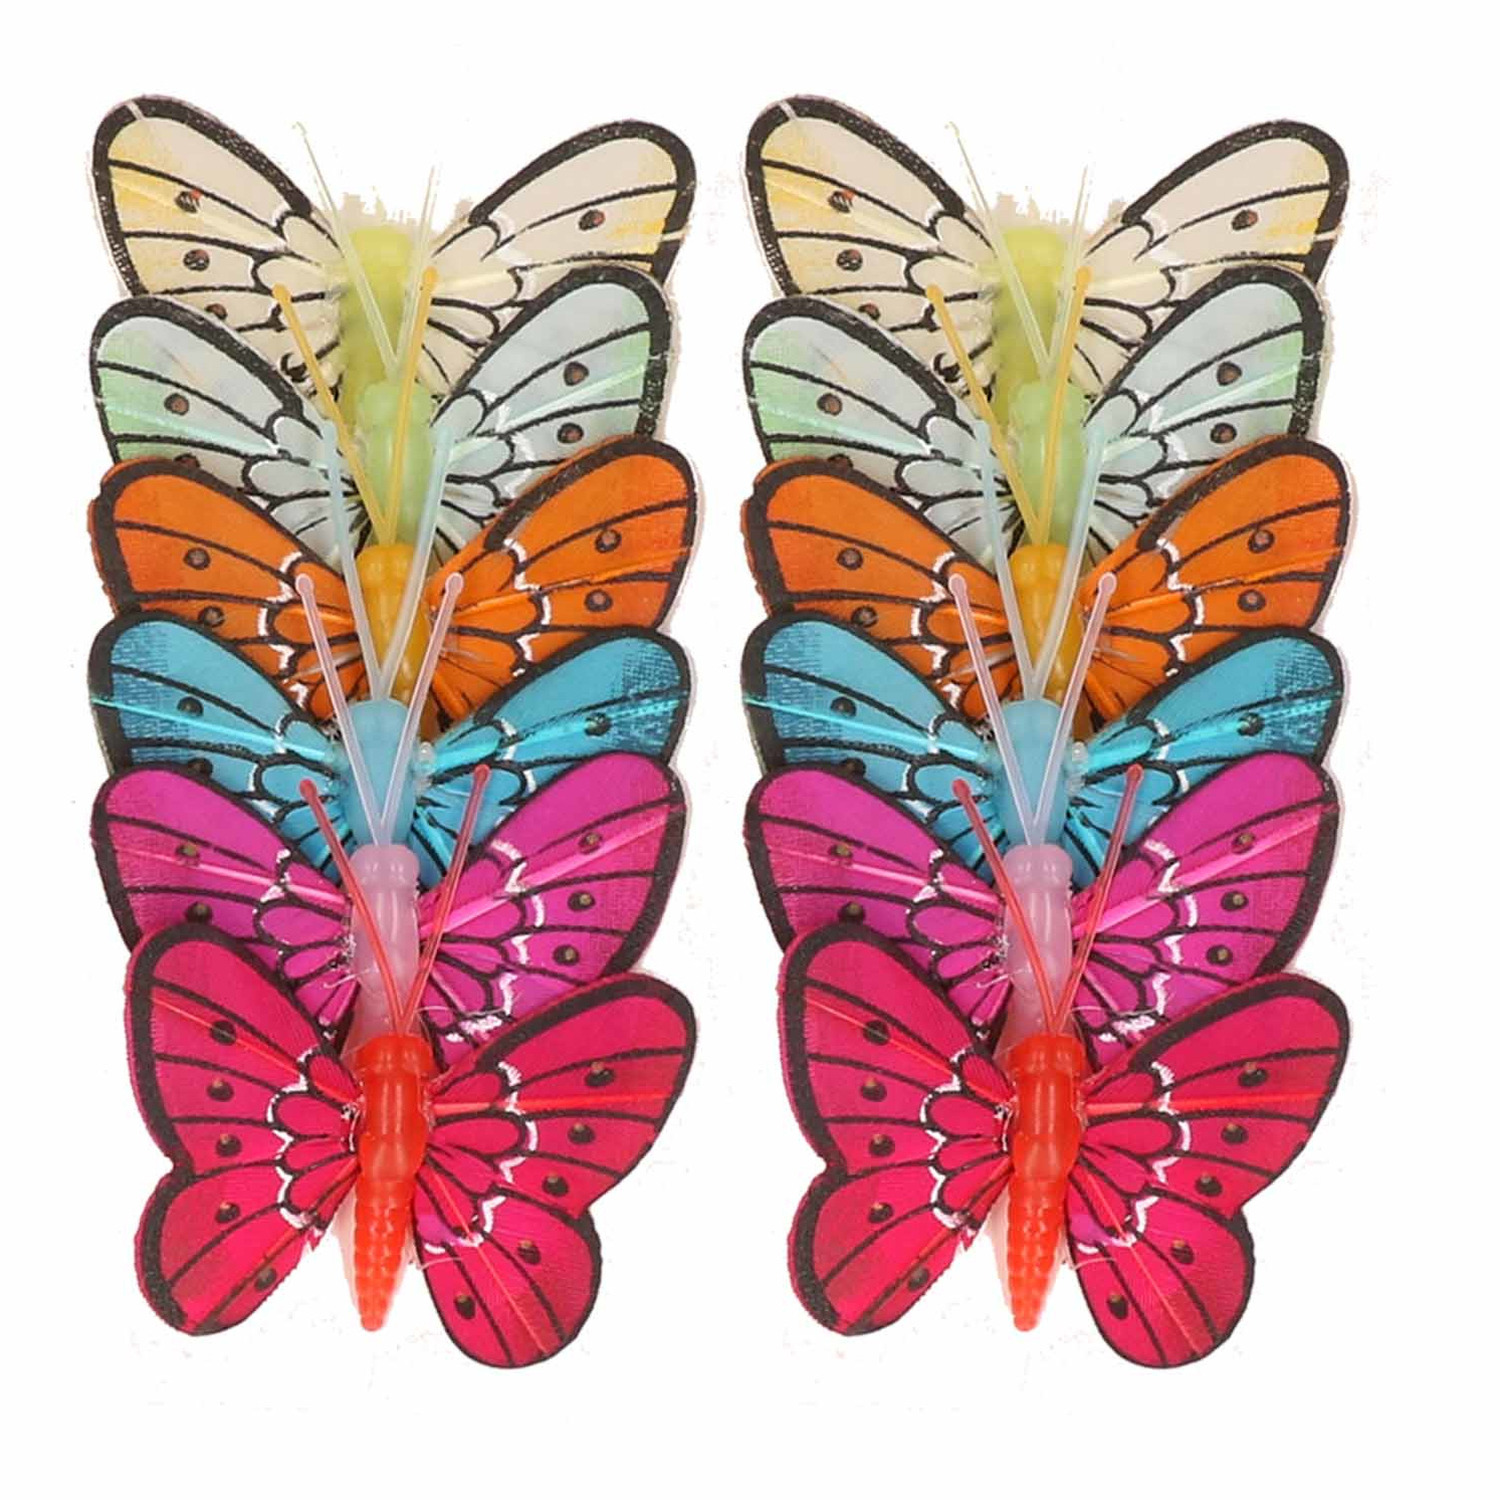 12x stuks Decoratie vlinders 5 cm op prikkers